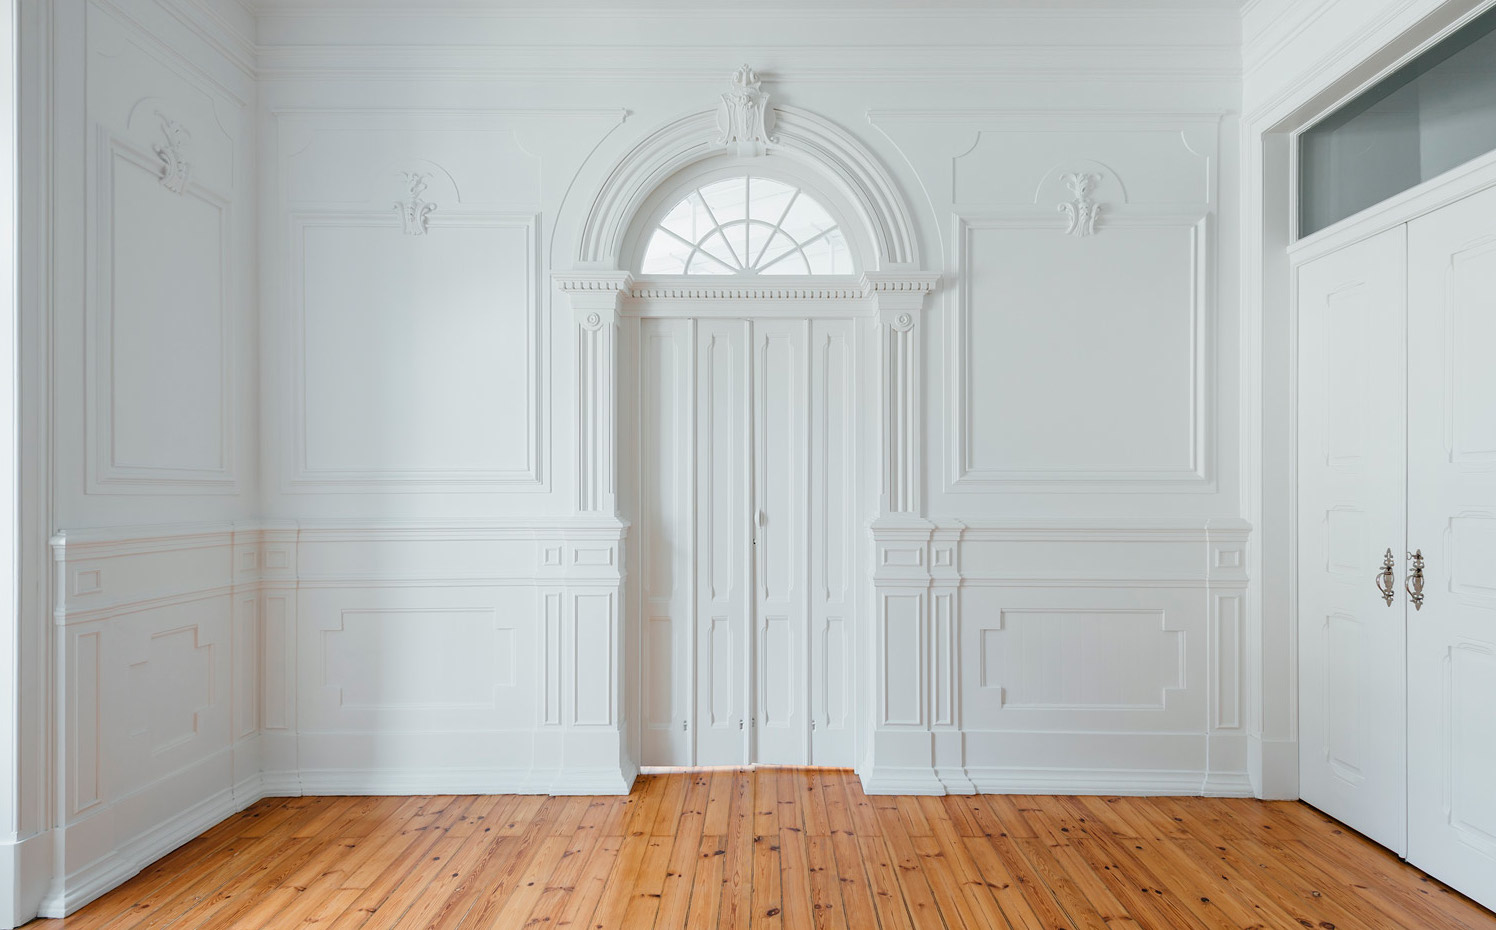 031. La puerta principal centenaria en blanco rodeada de las paredes artesonadas le da una enorme elegancia al espacio